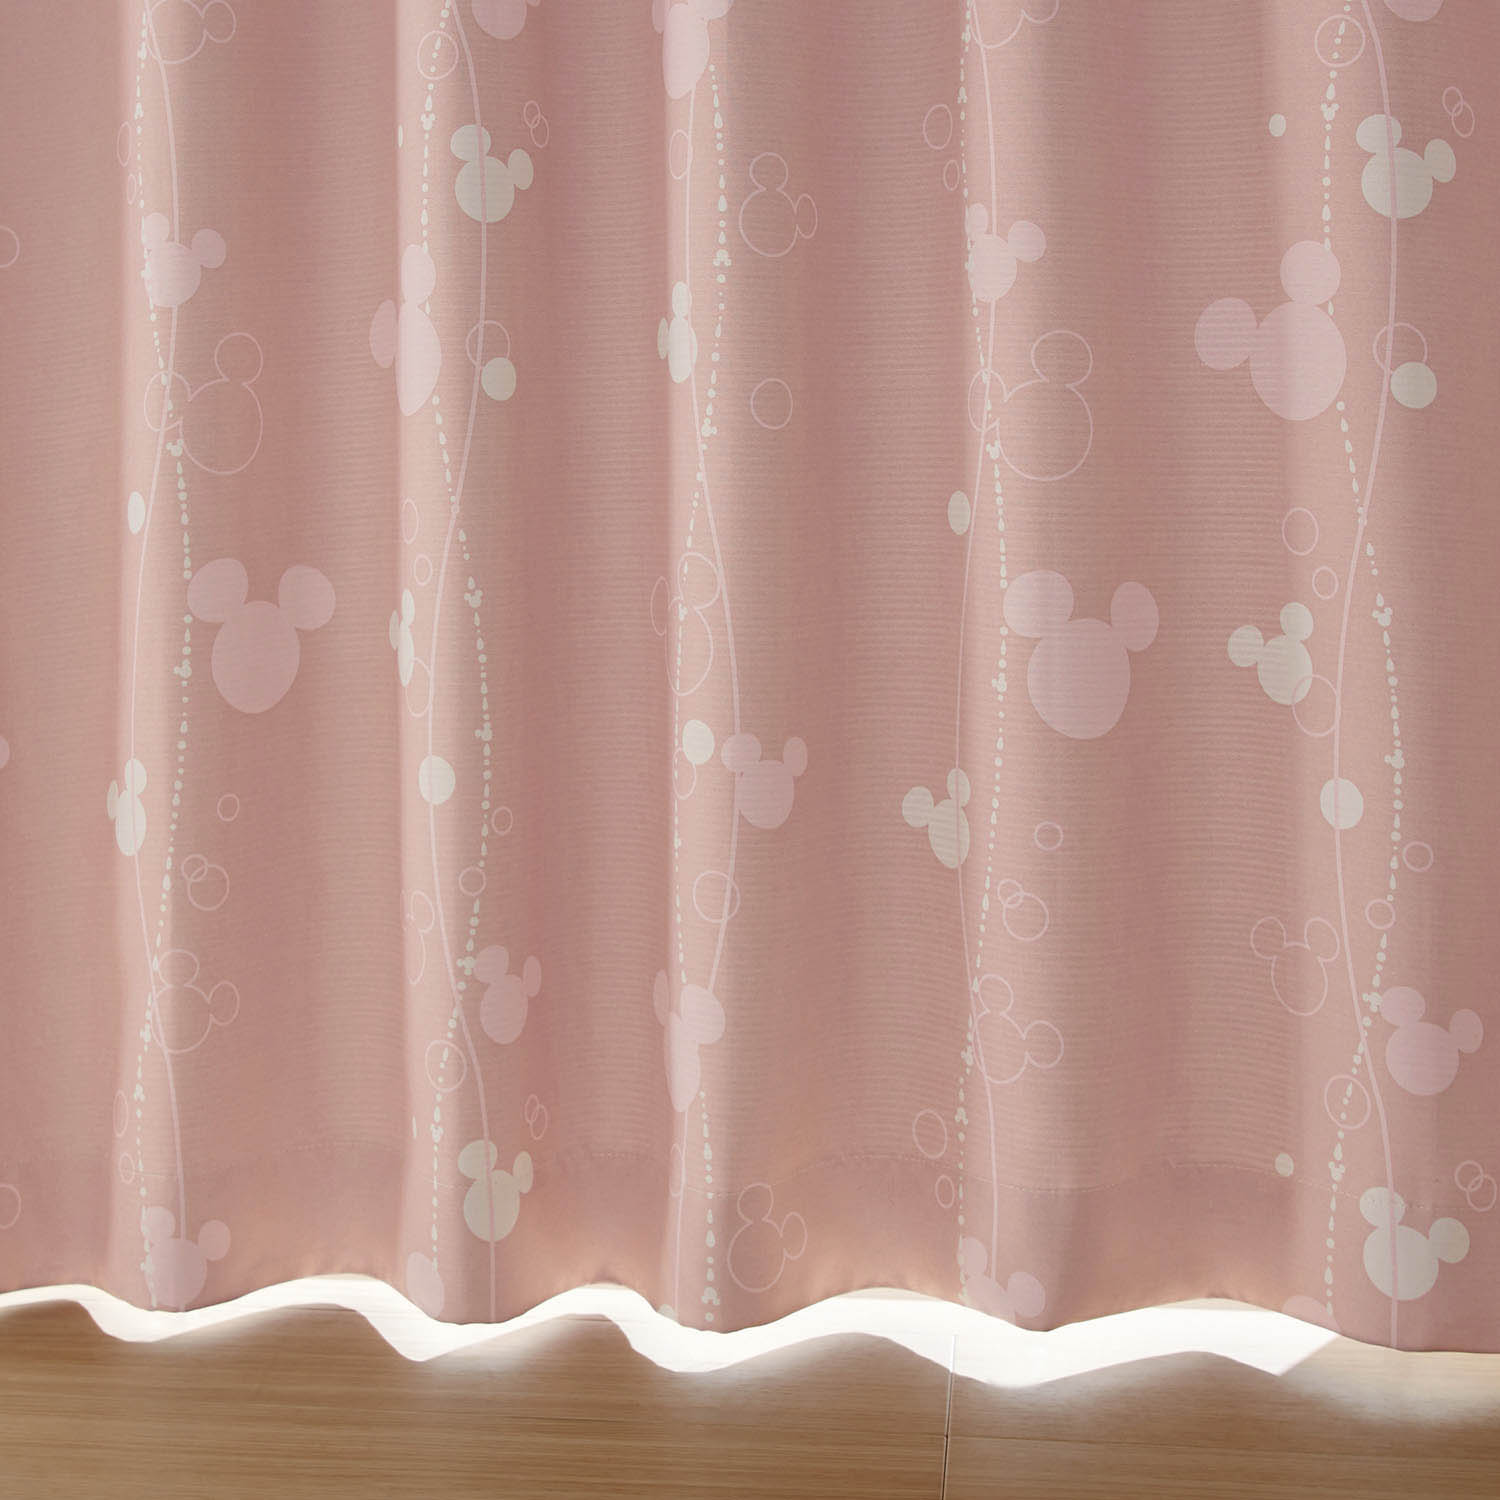 ベルメゾン ディズニー サイズが豊富な遮光カーテン「ミッキーモチーフ」 ピンク 約100×110(2枚)